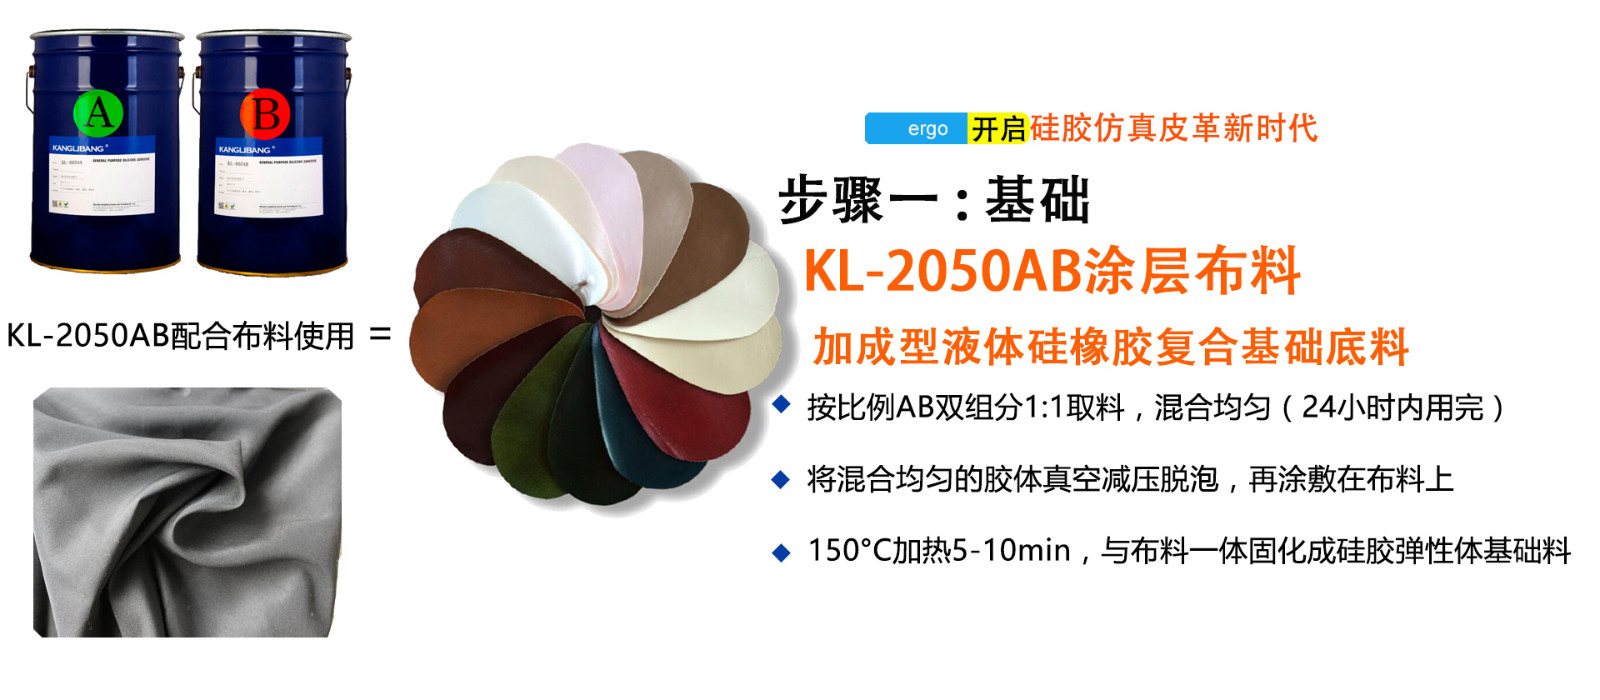 仿真皮布料专用液体硅胶KL-2050AB步骤一